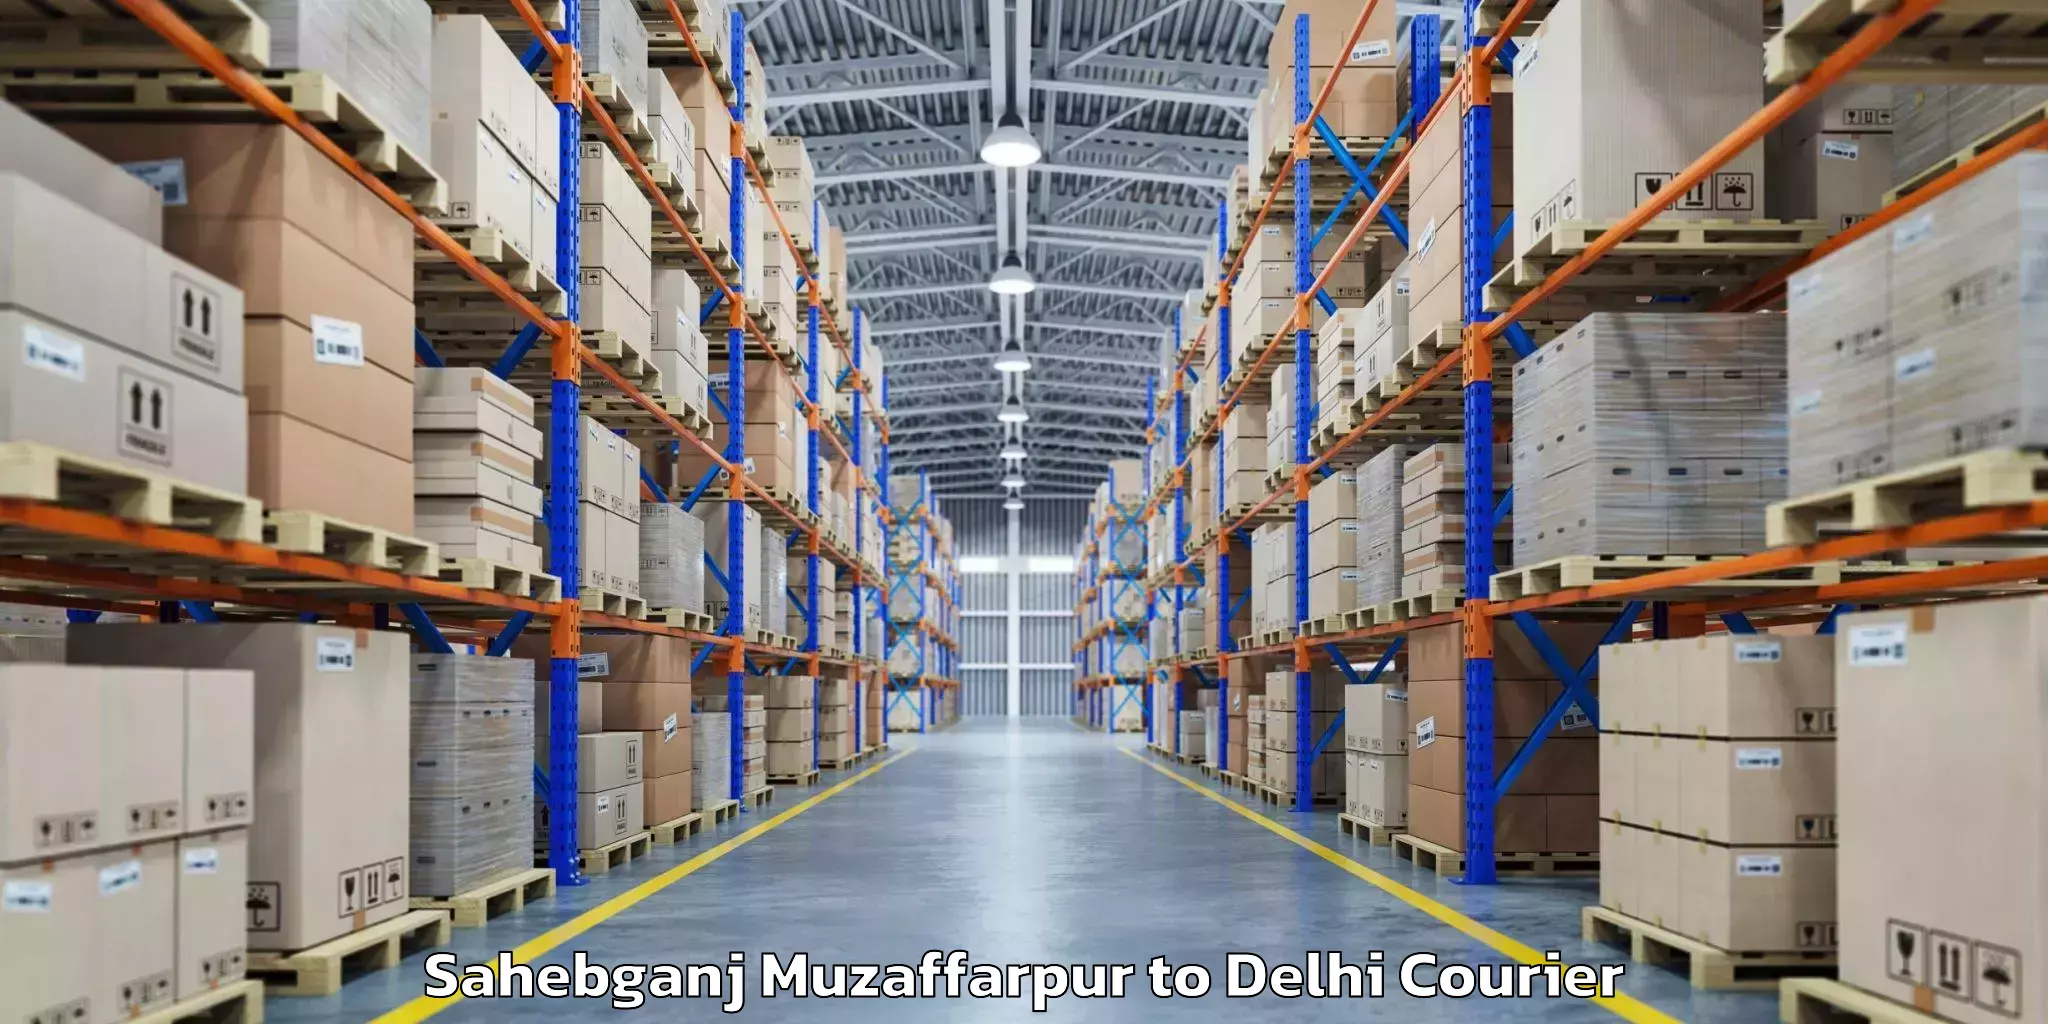 Baggage shipping advice Sahebganj Muzaffarpur to University of Delhi